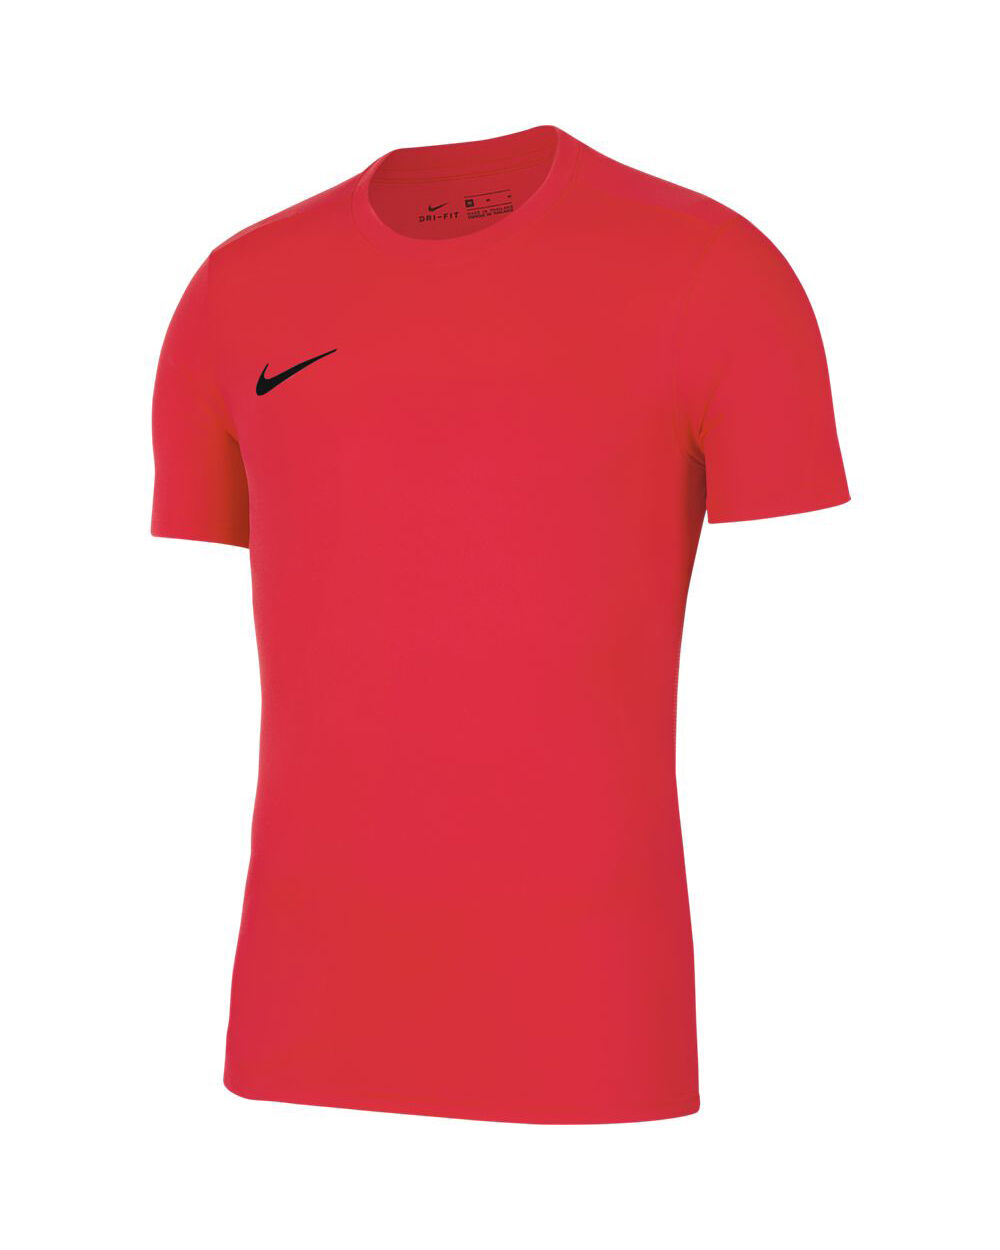 Camiseta Nike Park VII Rojo Carmesí Hombre - BV6708-635